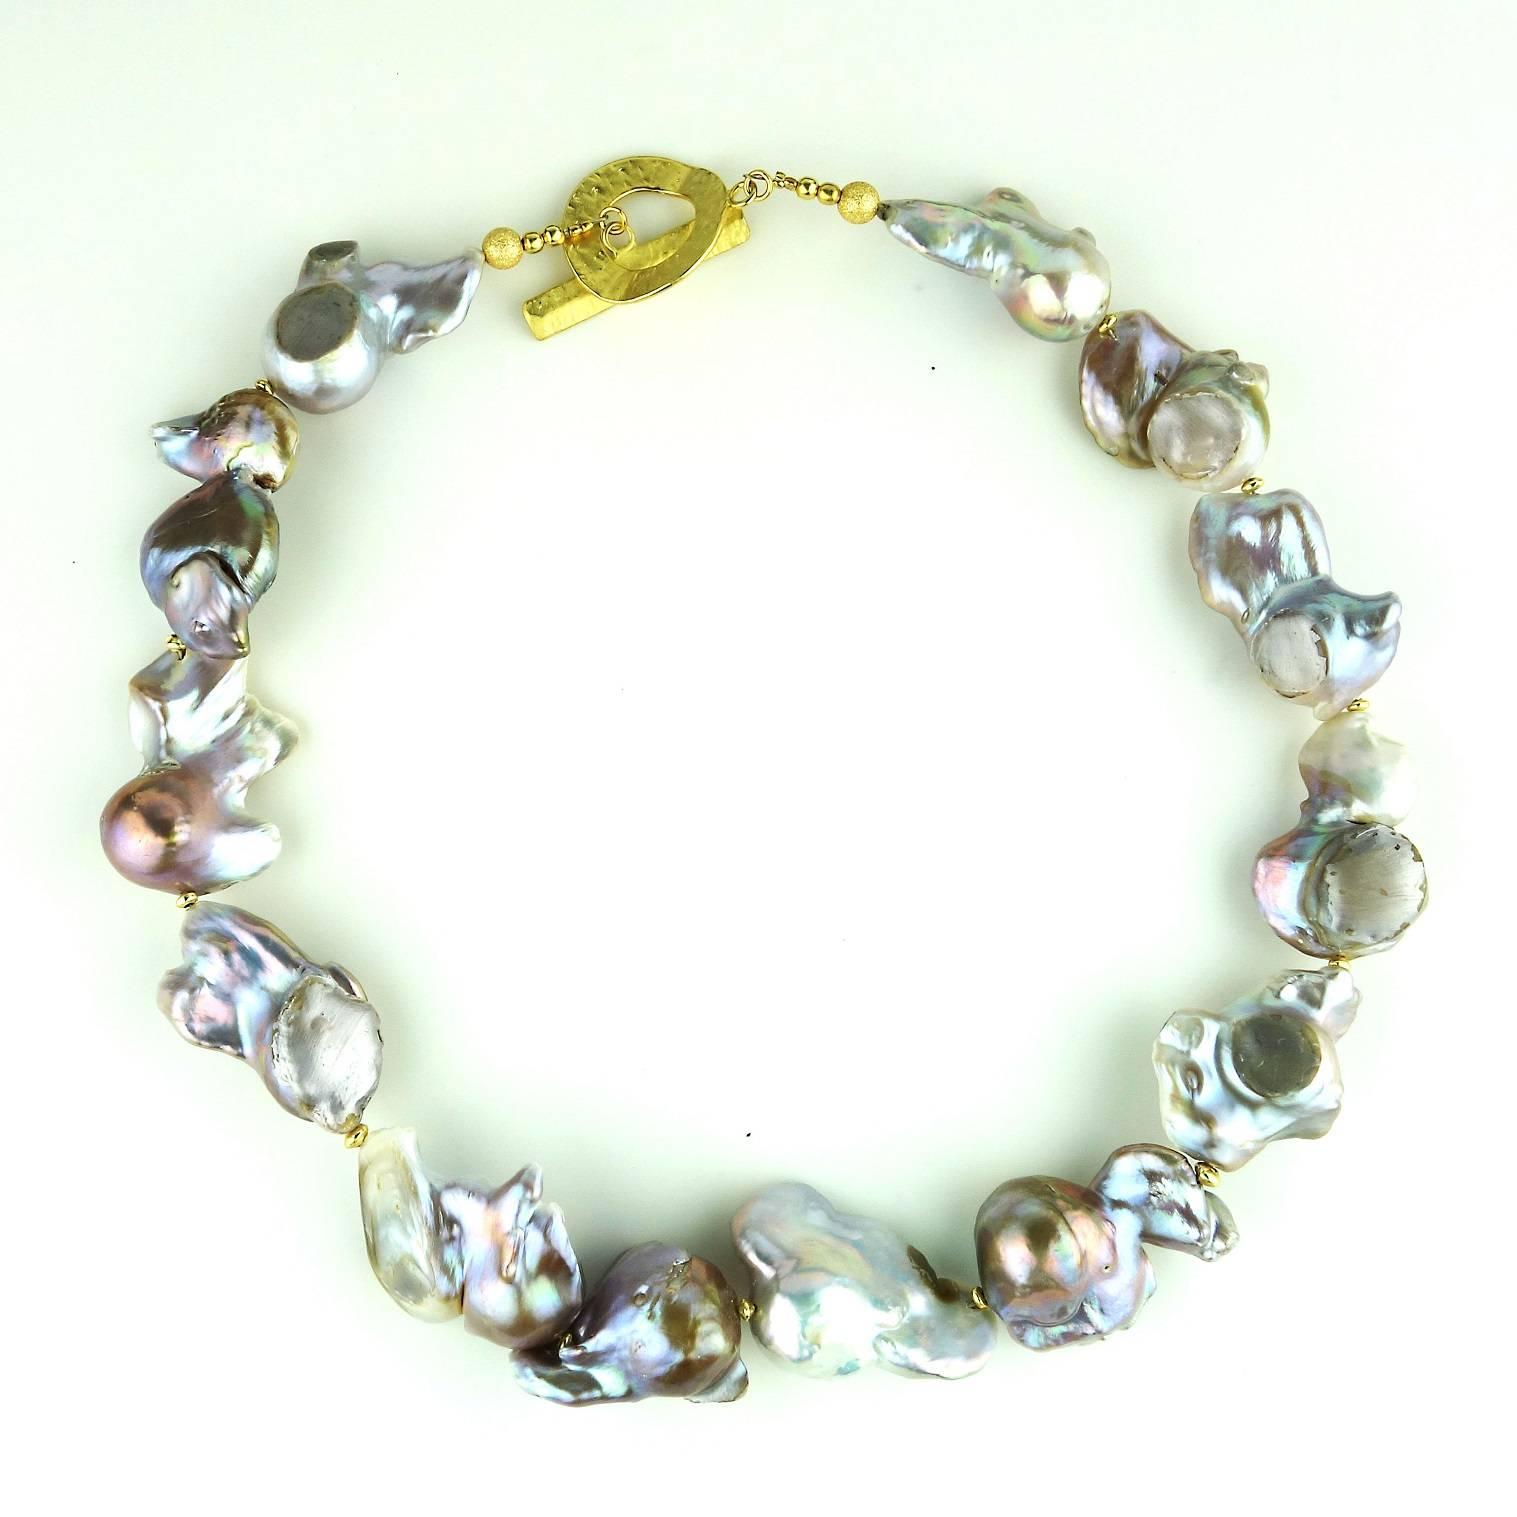 Wunderschöne:: große:: silberne Barockperlenkette. Diese barocken Perlen sind einzigartig in Farbe und Form:: jede für sich ein Schmuckstück. Sie changieren in Rosa-:: Grün- und einem Hauch von Bronze.  Die größte Perle misst 32 x 26 mm.  Die